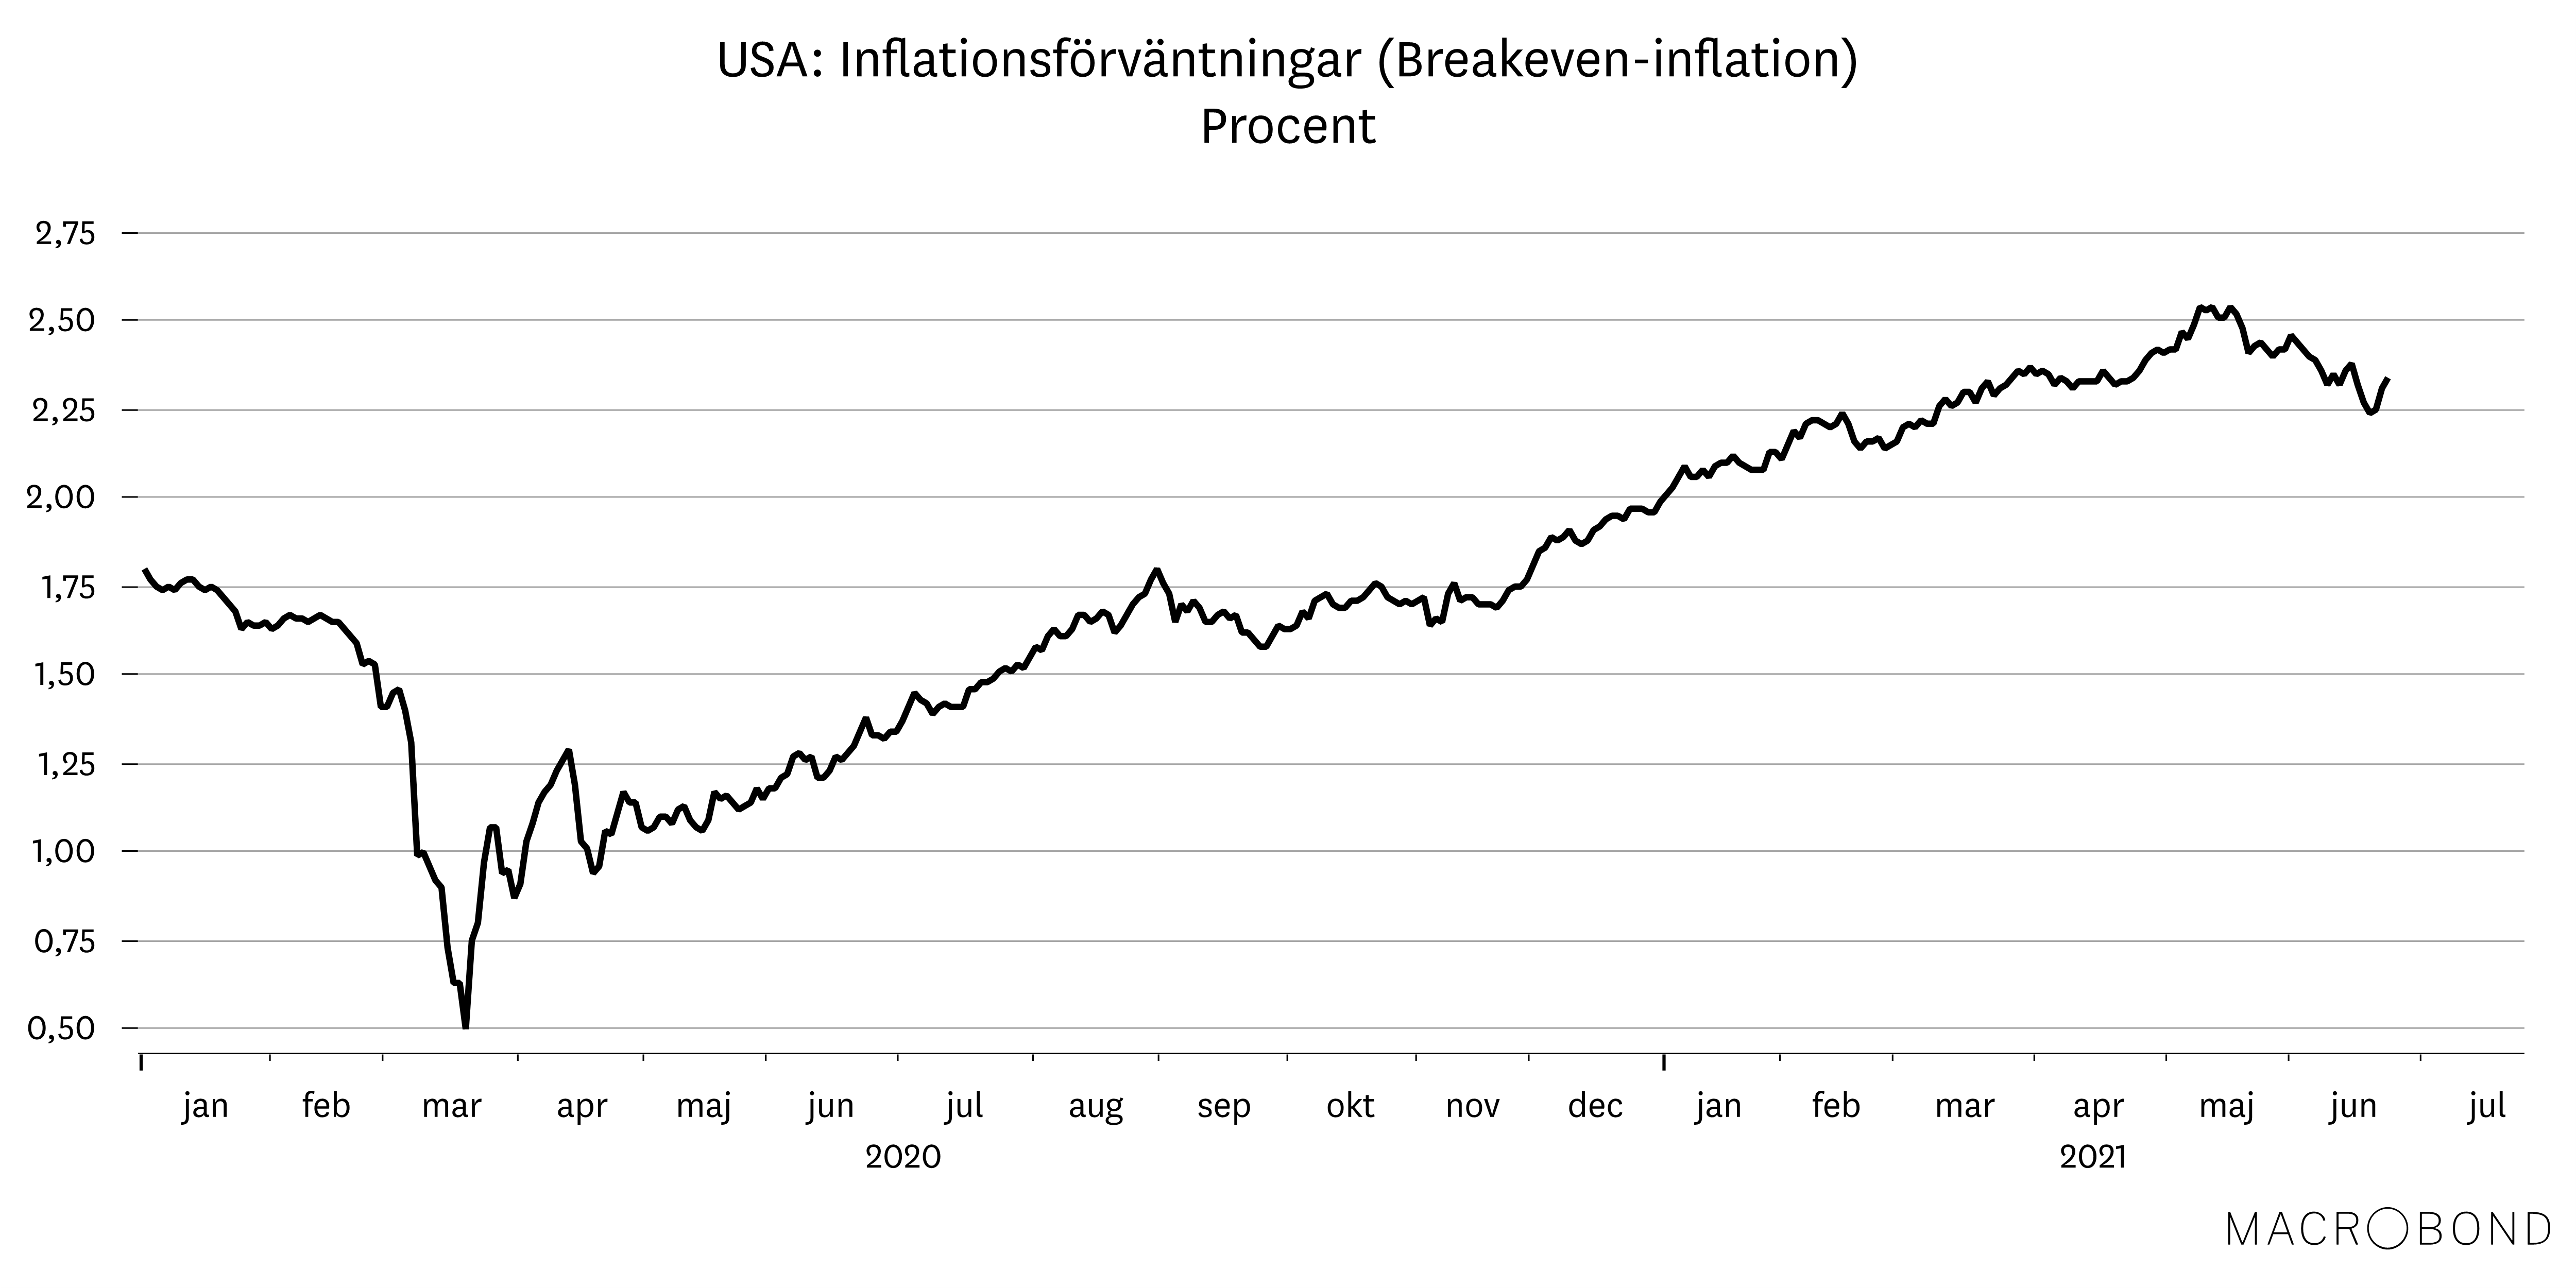 Marknadsbrev juni 2021 - USA inflationsförväntingar.png